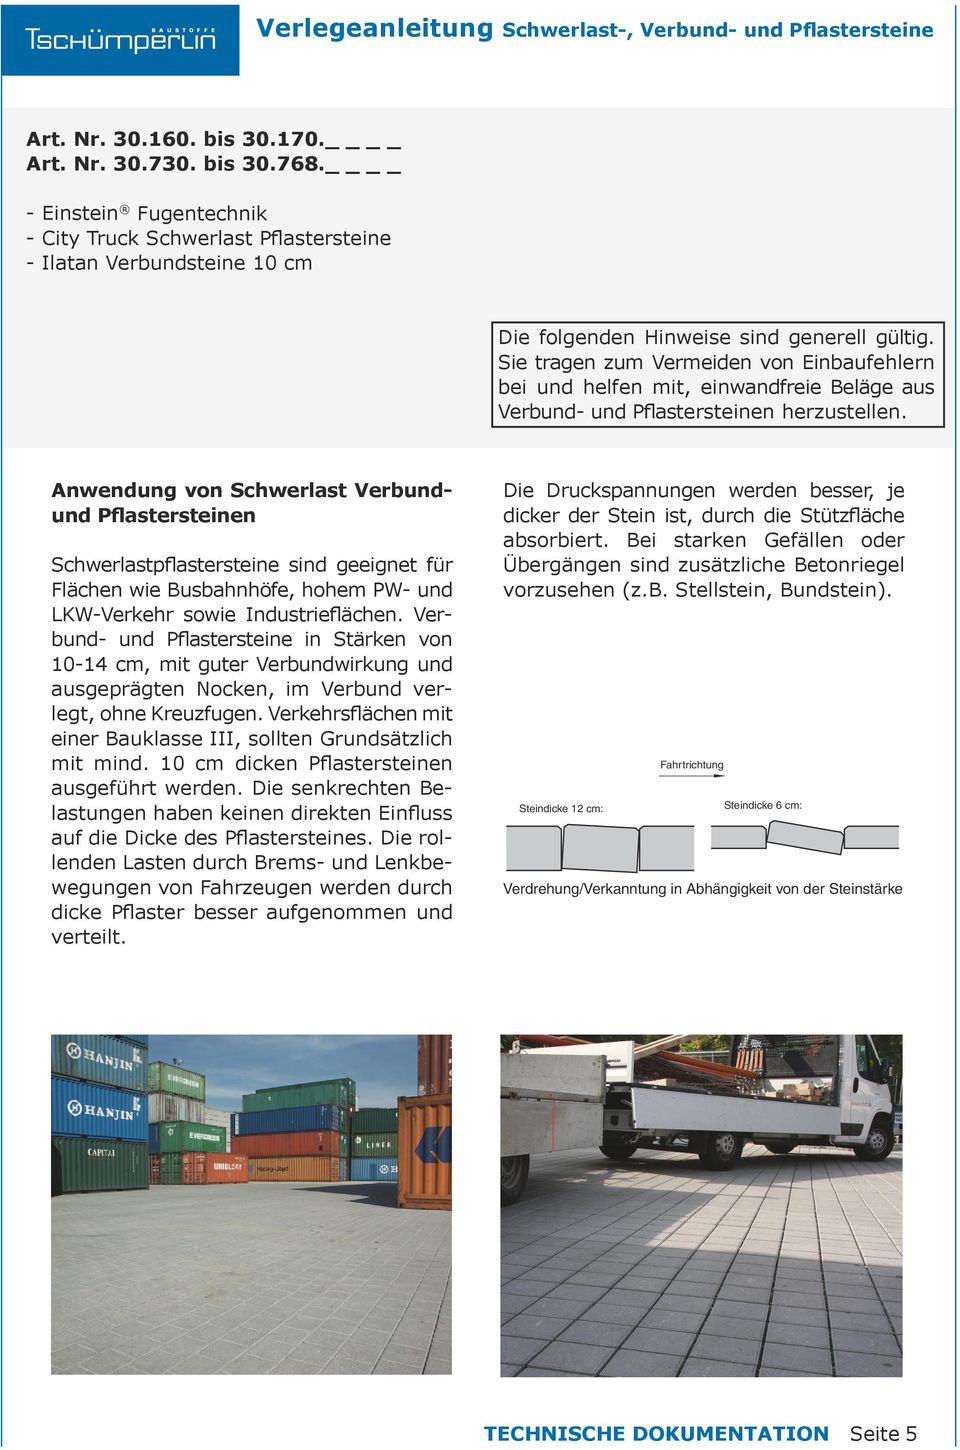 Anwendung von Schwerlast Verbundund n Schwerlastpflastersteine sind geeignet für Flächen wie Busbahnhöfe, hohem PW- und LKW-Verkehr sowie Industrieflächen.